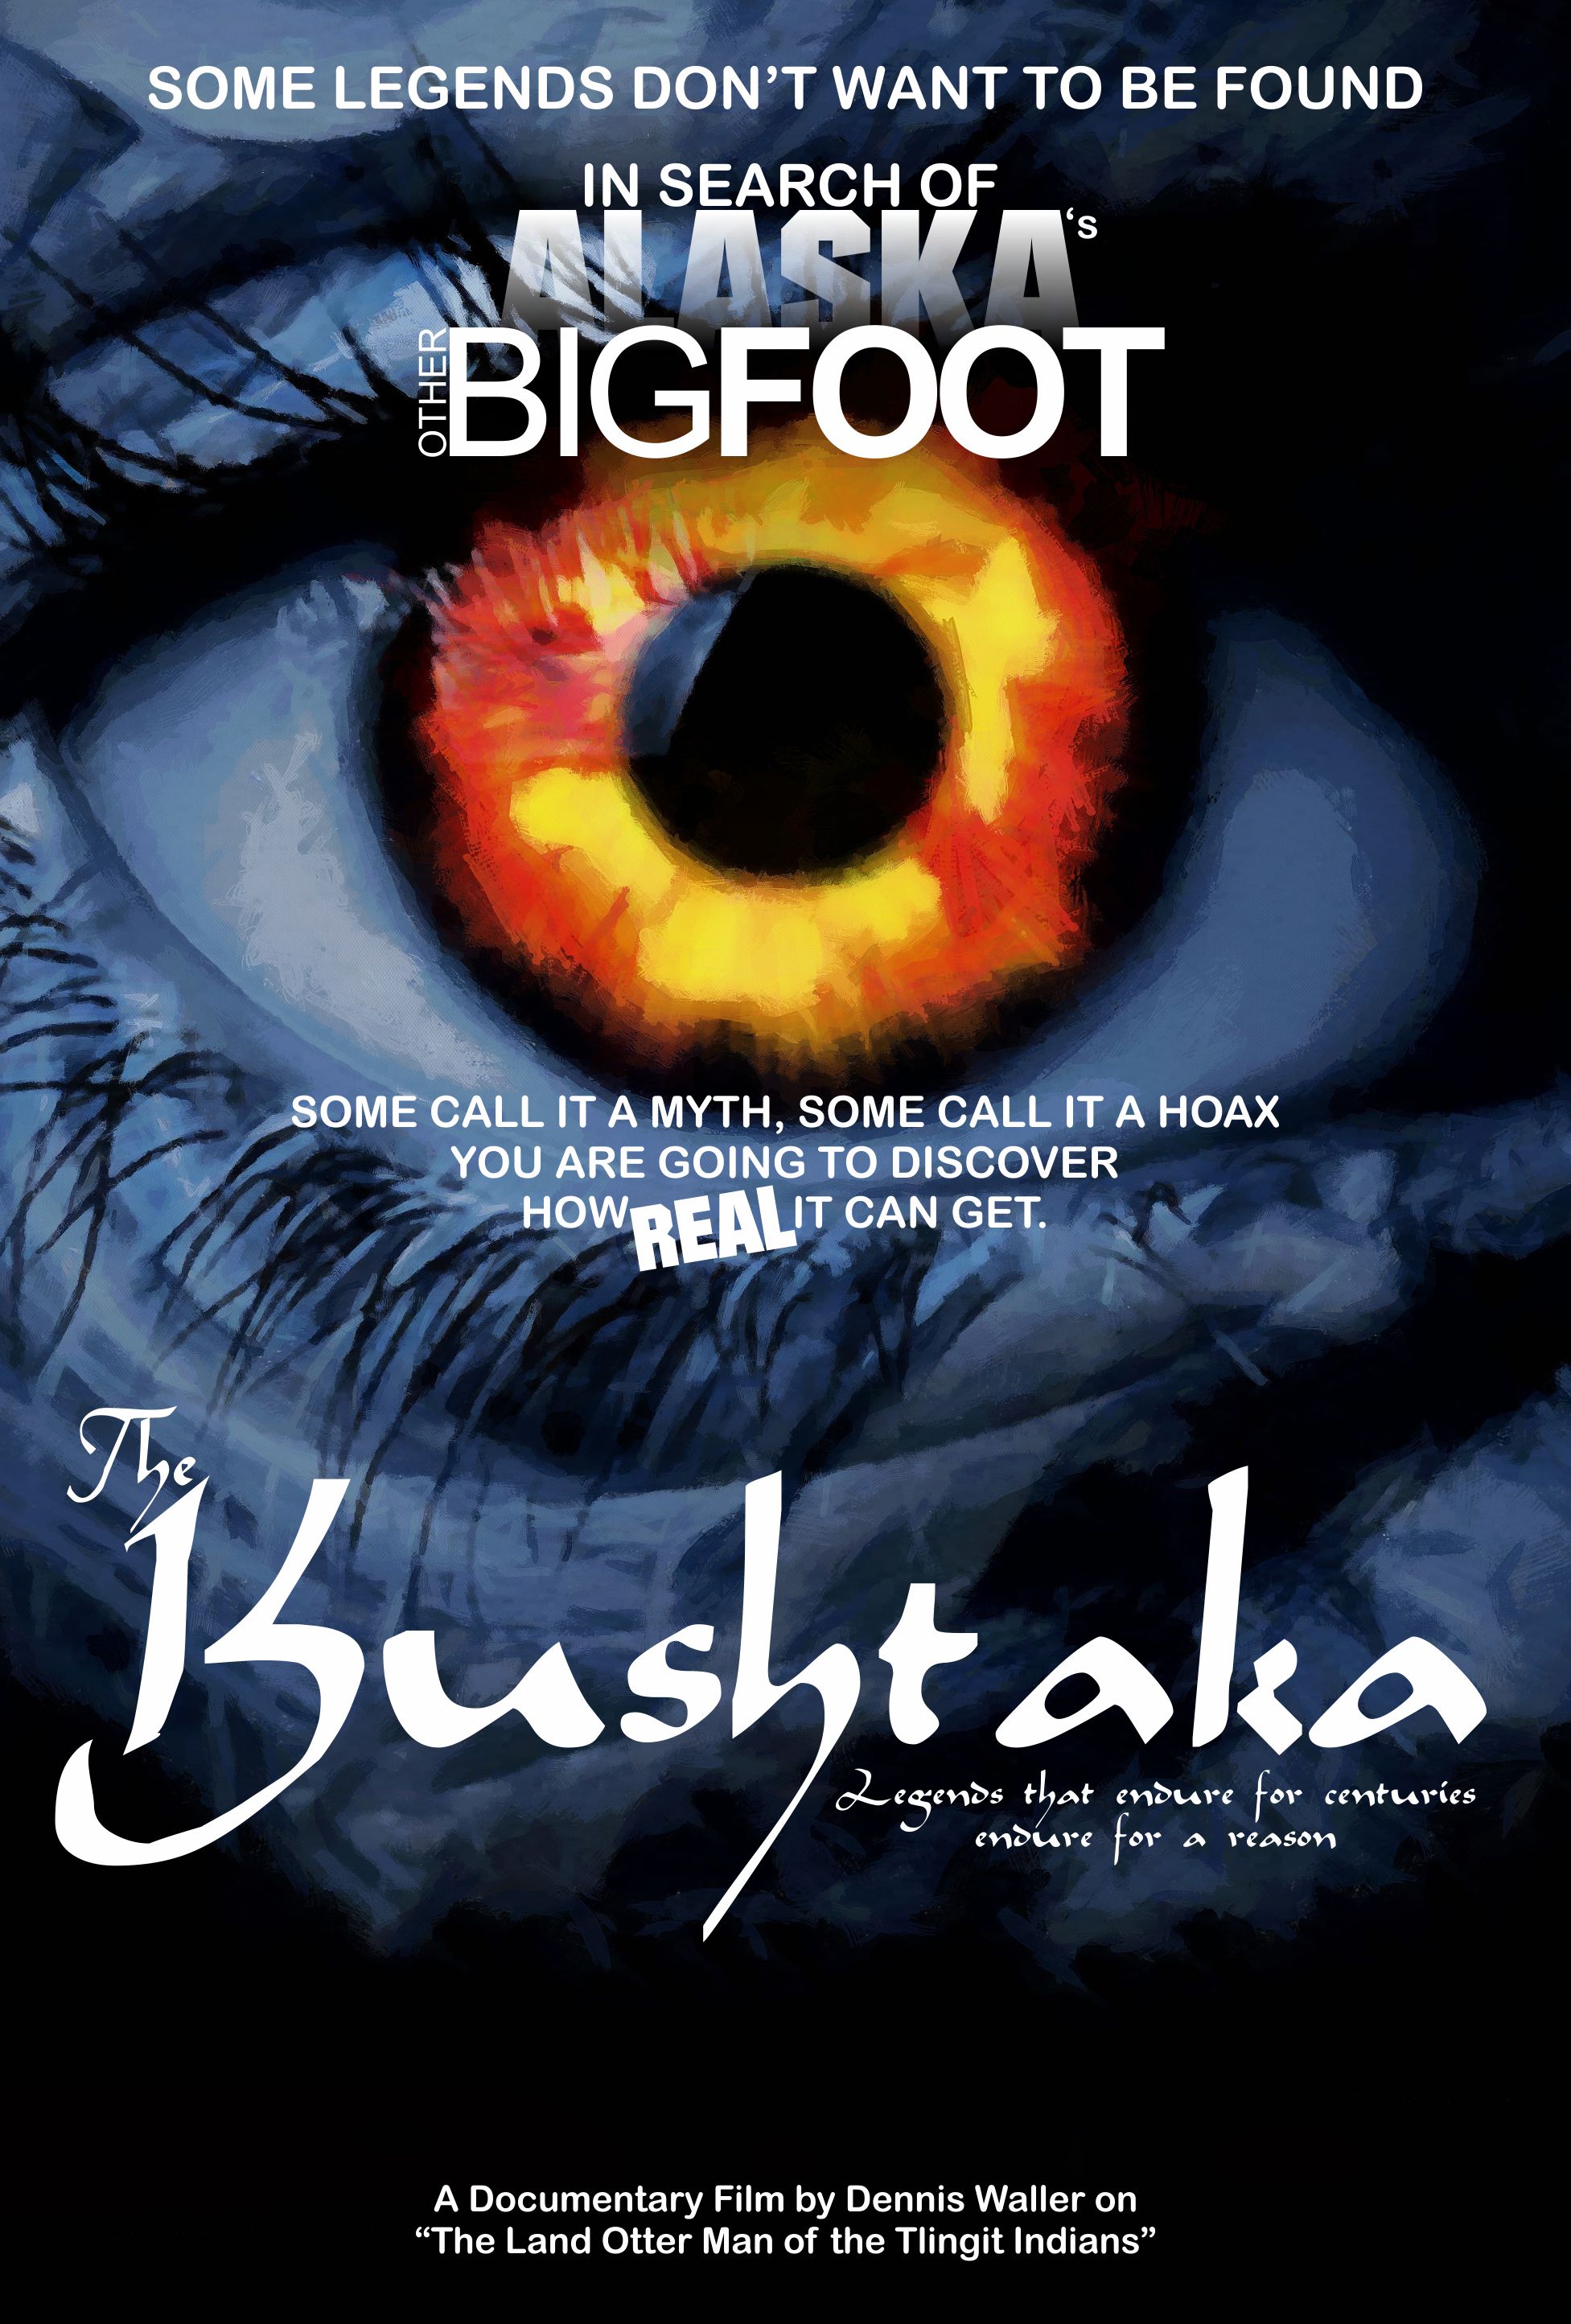 Poster for the Kushtaka documentary